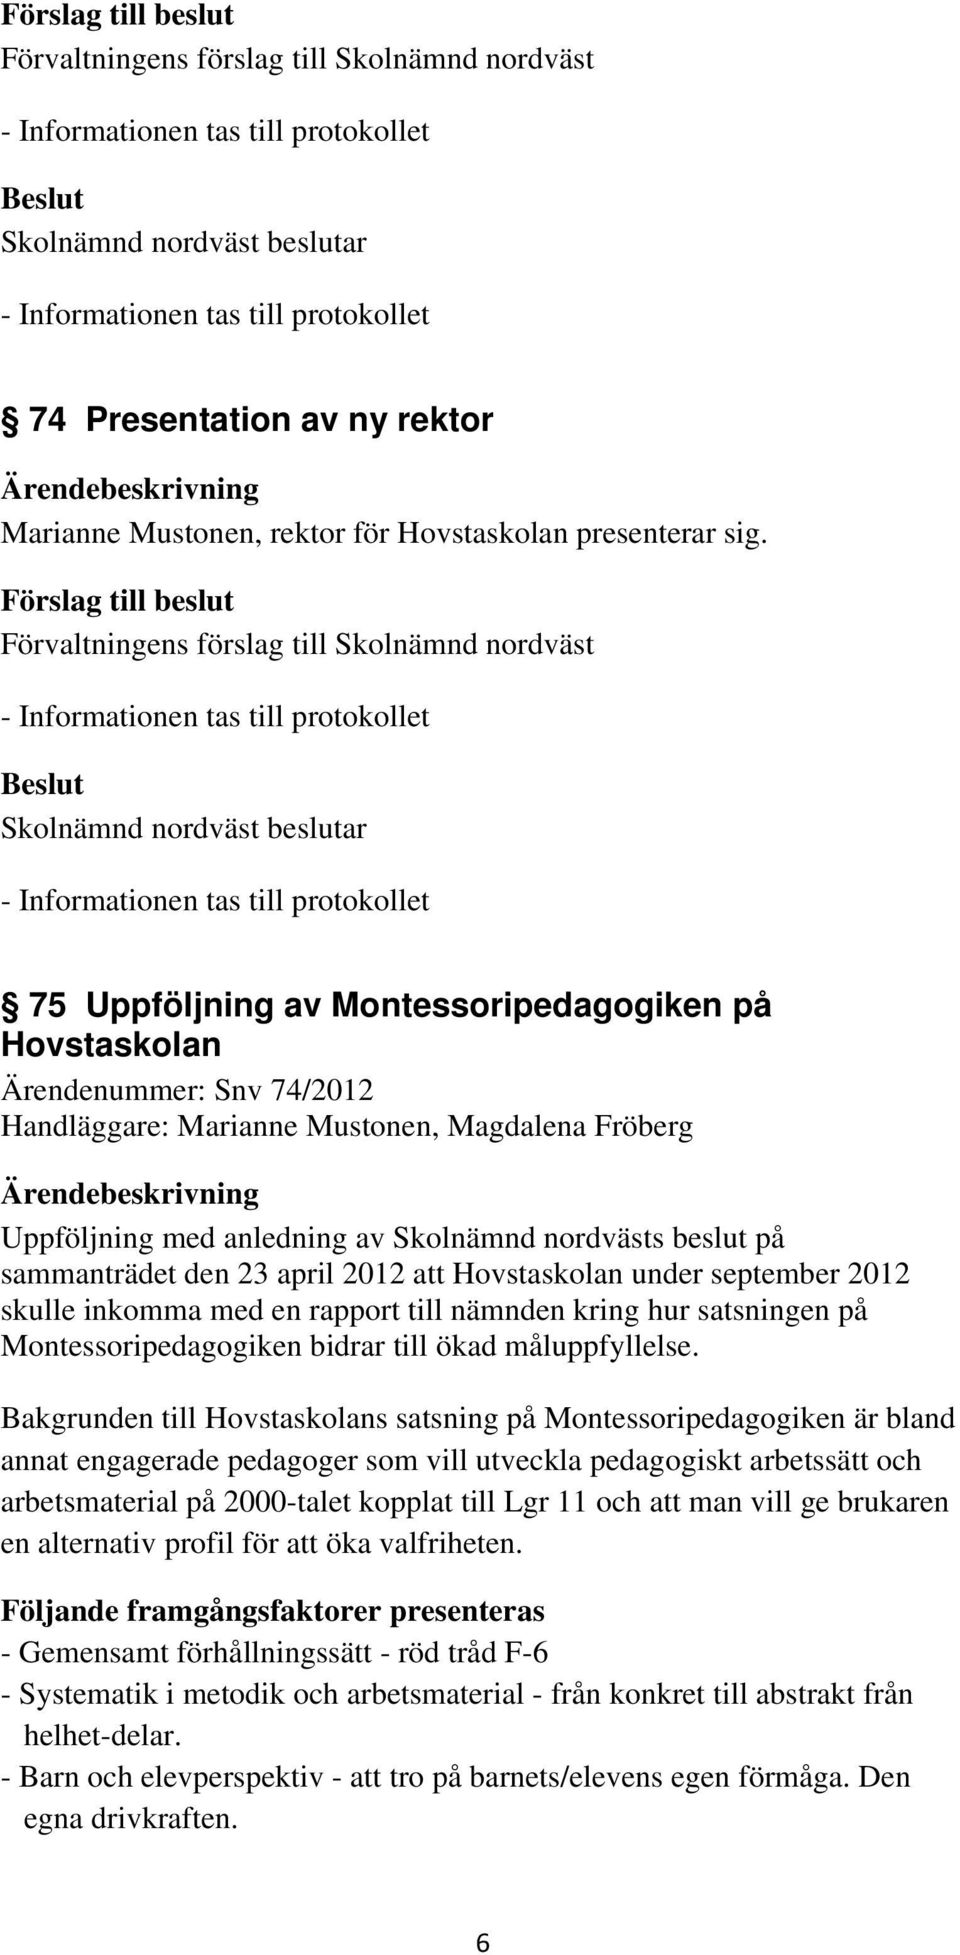 sammanträdet den 23 april 2012 att Hovstaskolan under september 2012 skulle inkomma med en rapport till nämnden kring hur satsningen på Montessoripedagogiken bidrar till ökad måluppfyllelse.